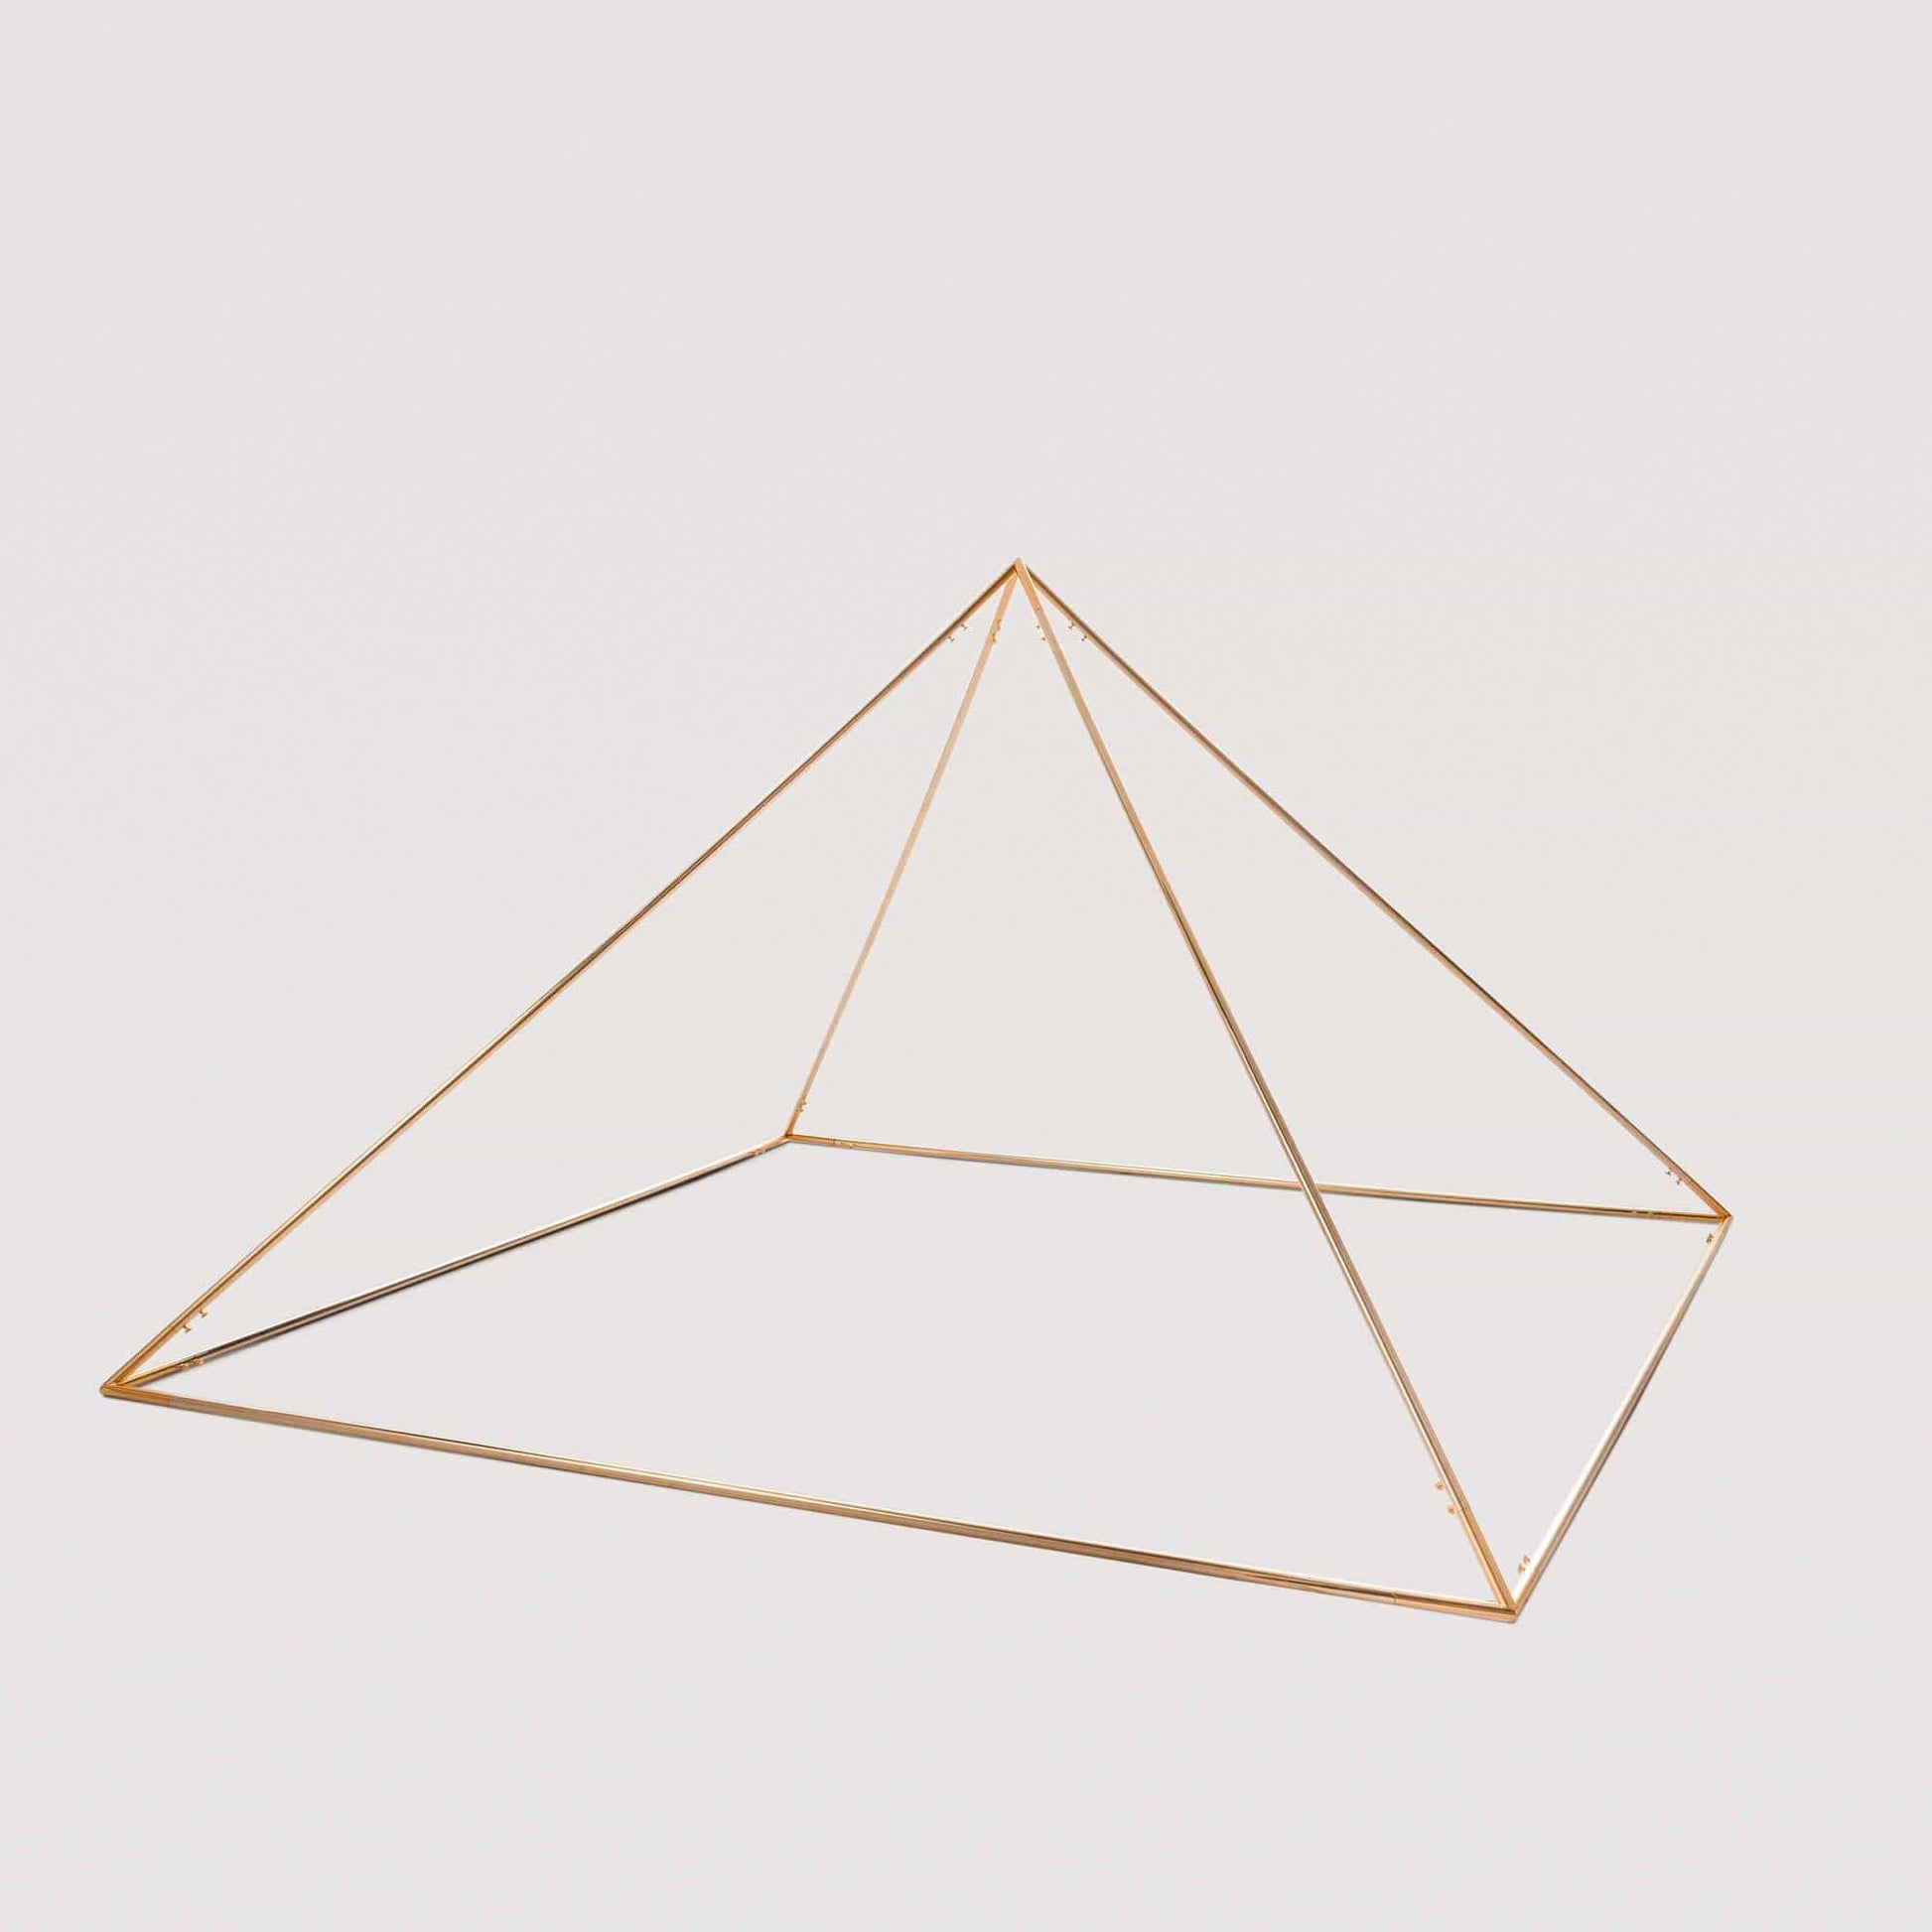 Tenetpietre Piramide Piramide smontabile Cheope modello 1/100 - placcata in oro 24k